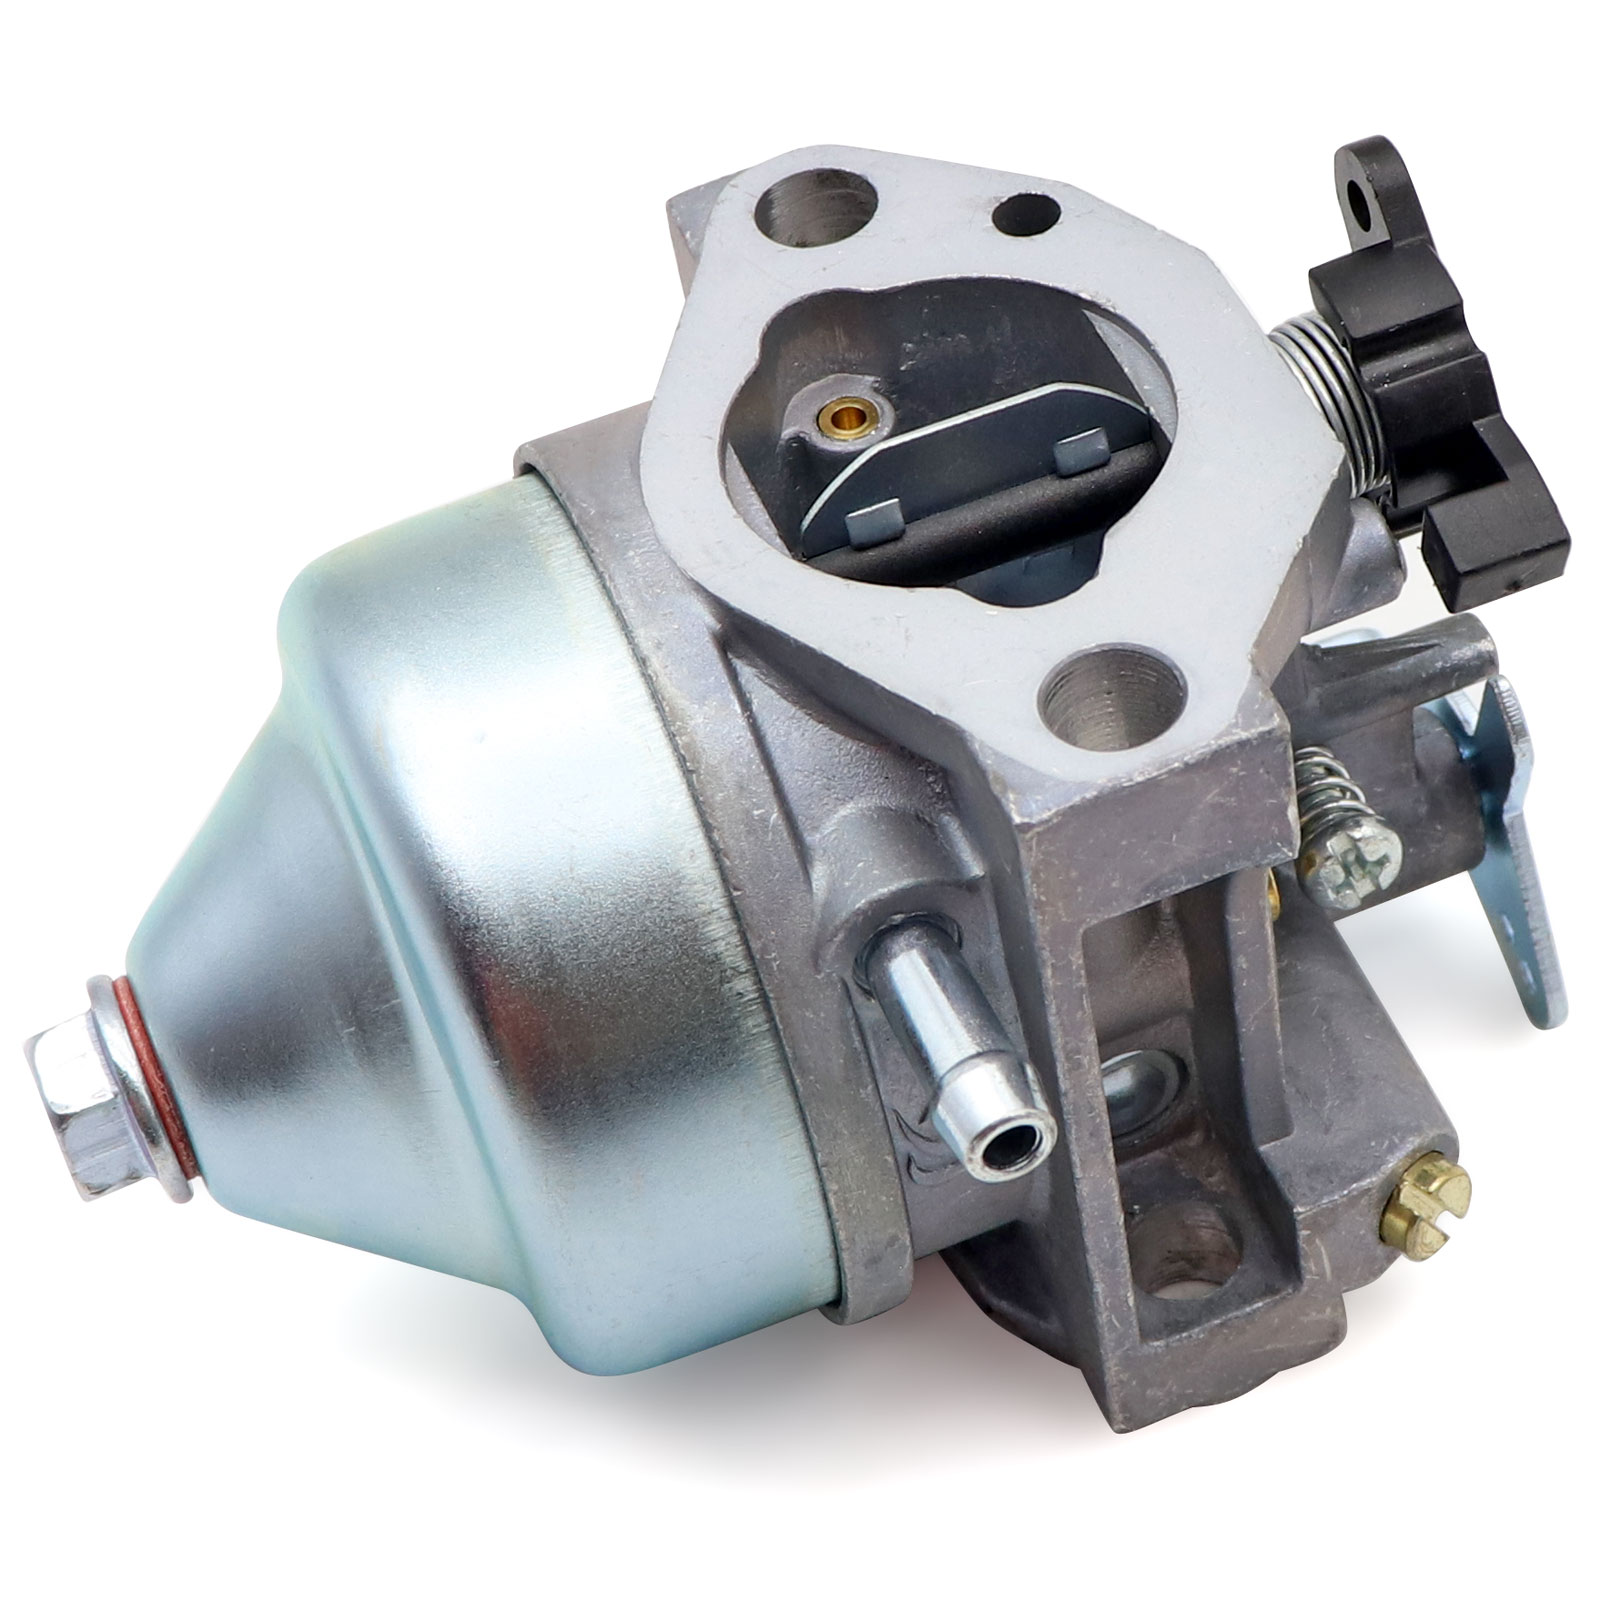 Carburetor For Honda GCV 190 GCV190 Engines Carb Assembly